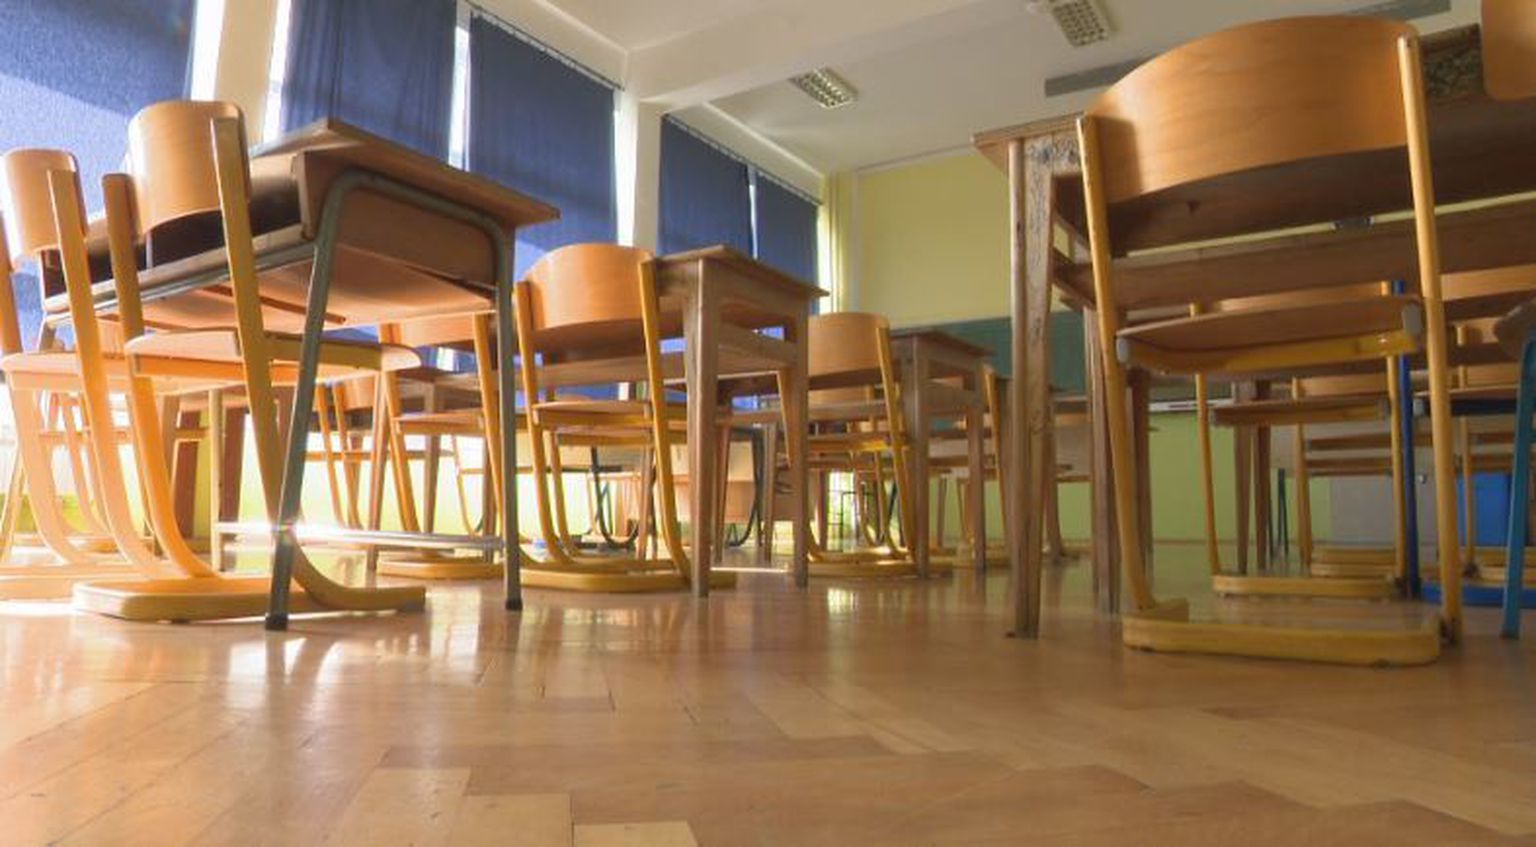 Učenici osnovne škole u Zagrebu zlostavljali dječaka s poteškoćama u razvoju